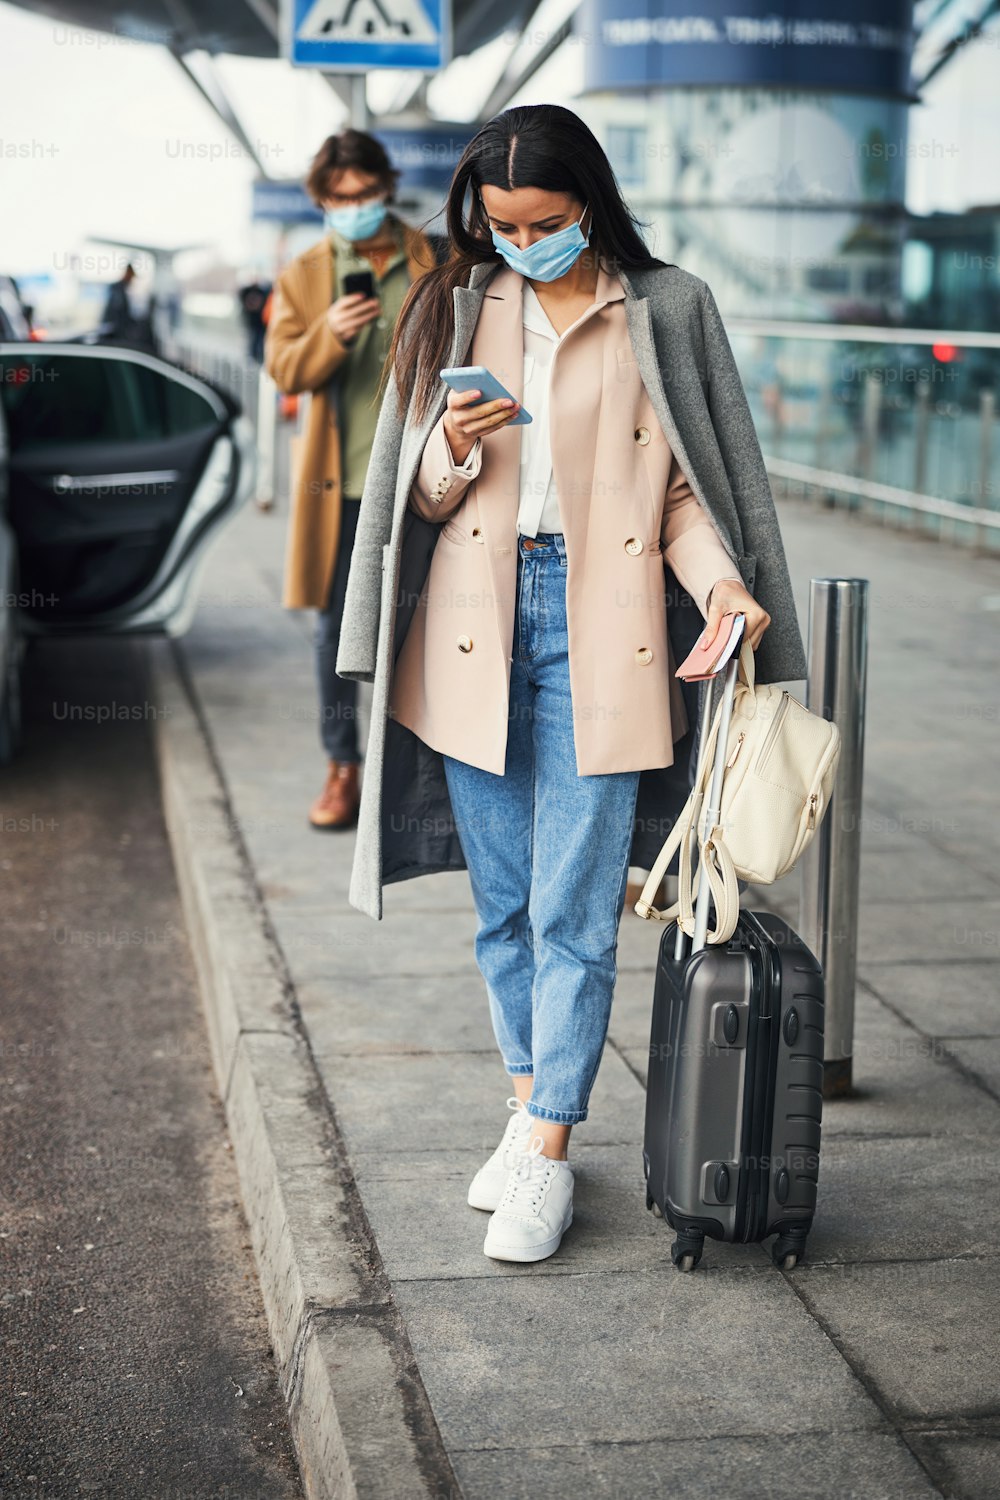 Signora elegante con valigia da viaggio che indossa una maschera protettiva per il viso mentre legge il messaggio sullo smartphone per strada